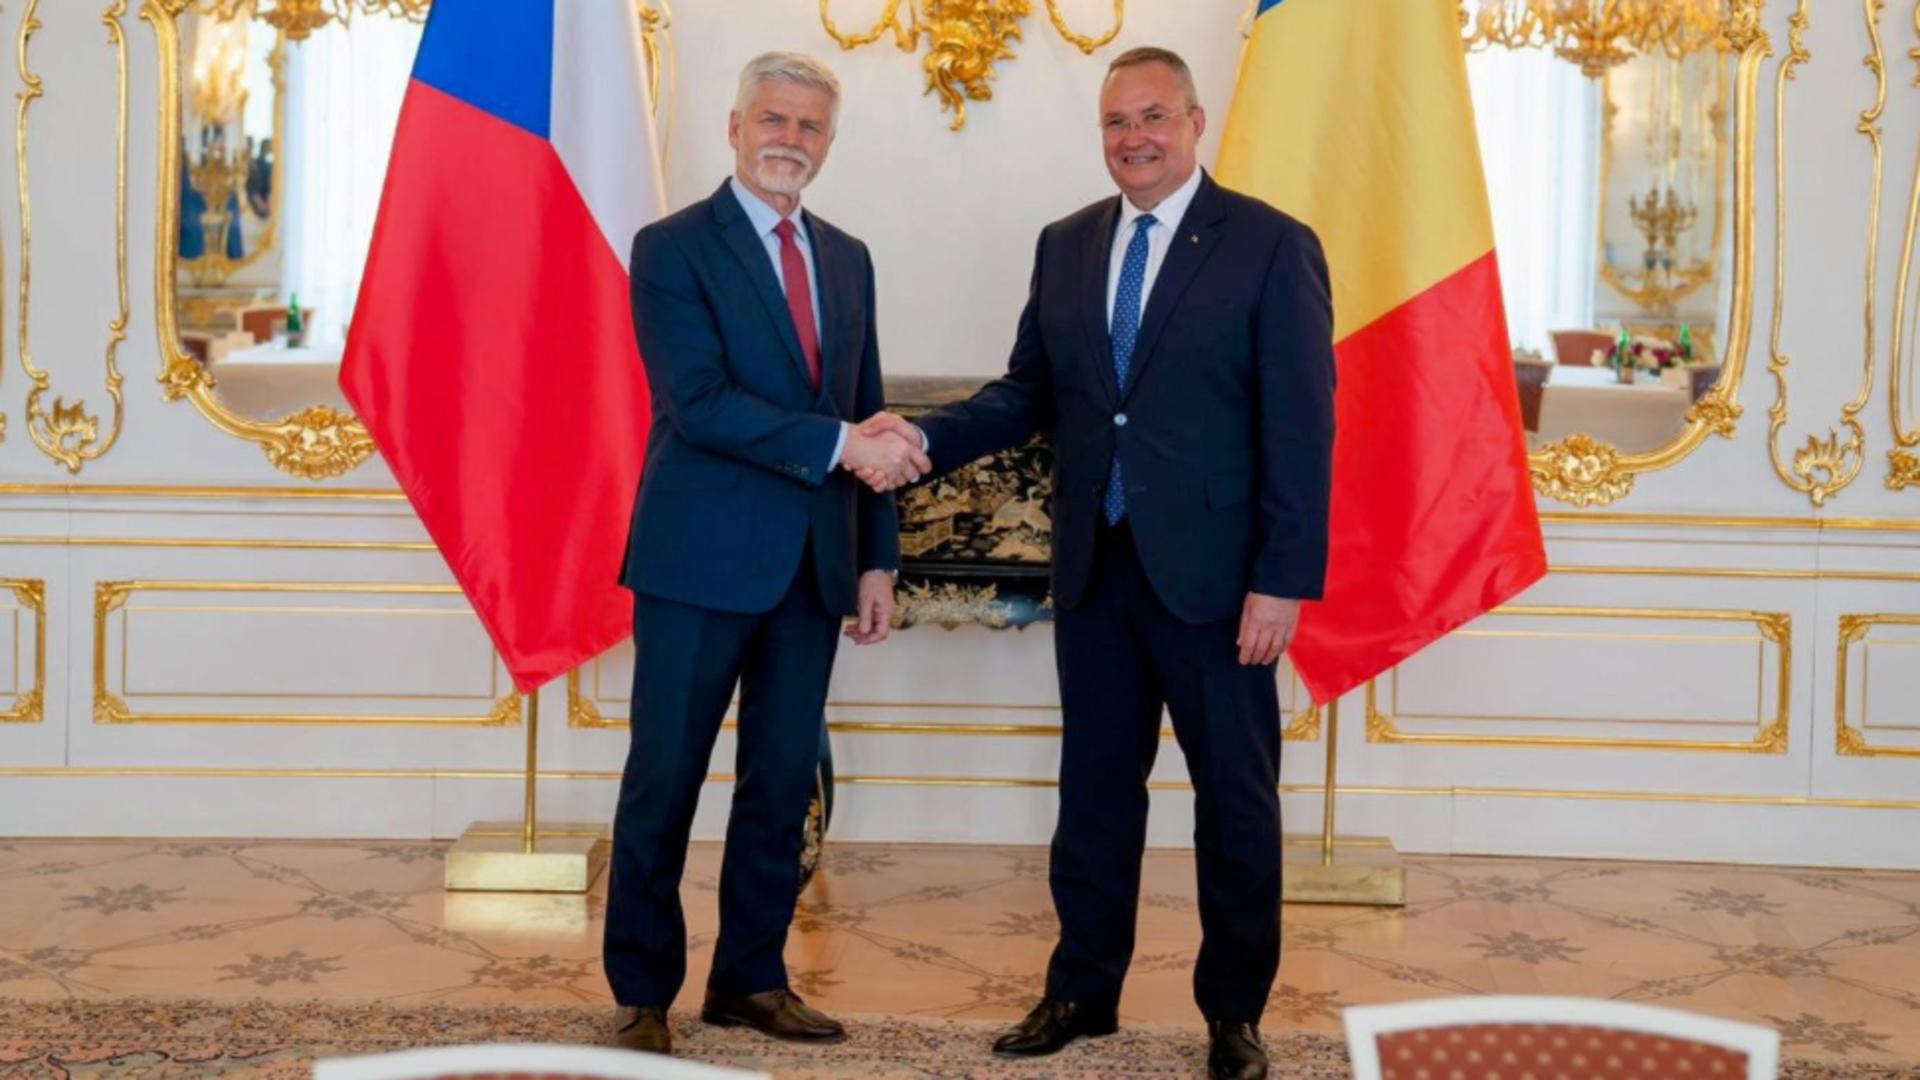 Nicolae Ciucă s-a întâlnit cu președintele Cehiei, în prima zi a vizitei la Praga. Ambii oficiali sunt militari de carieră